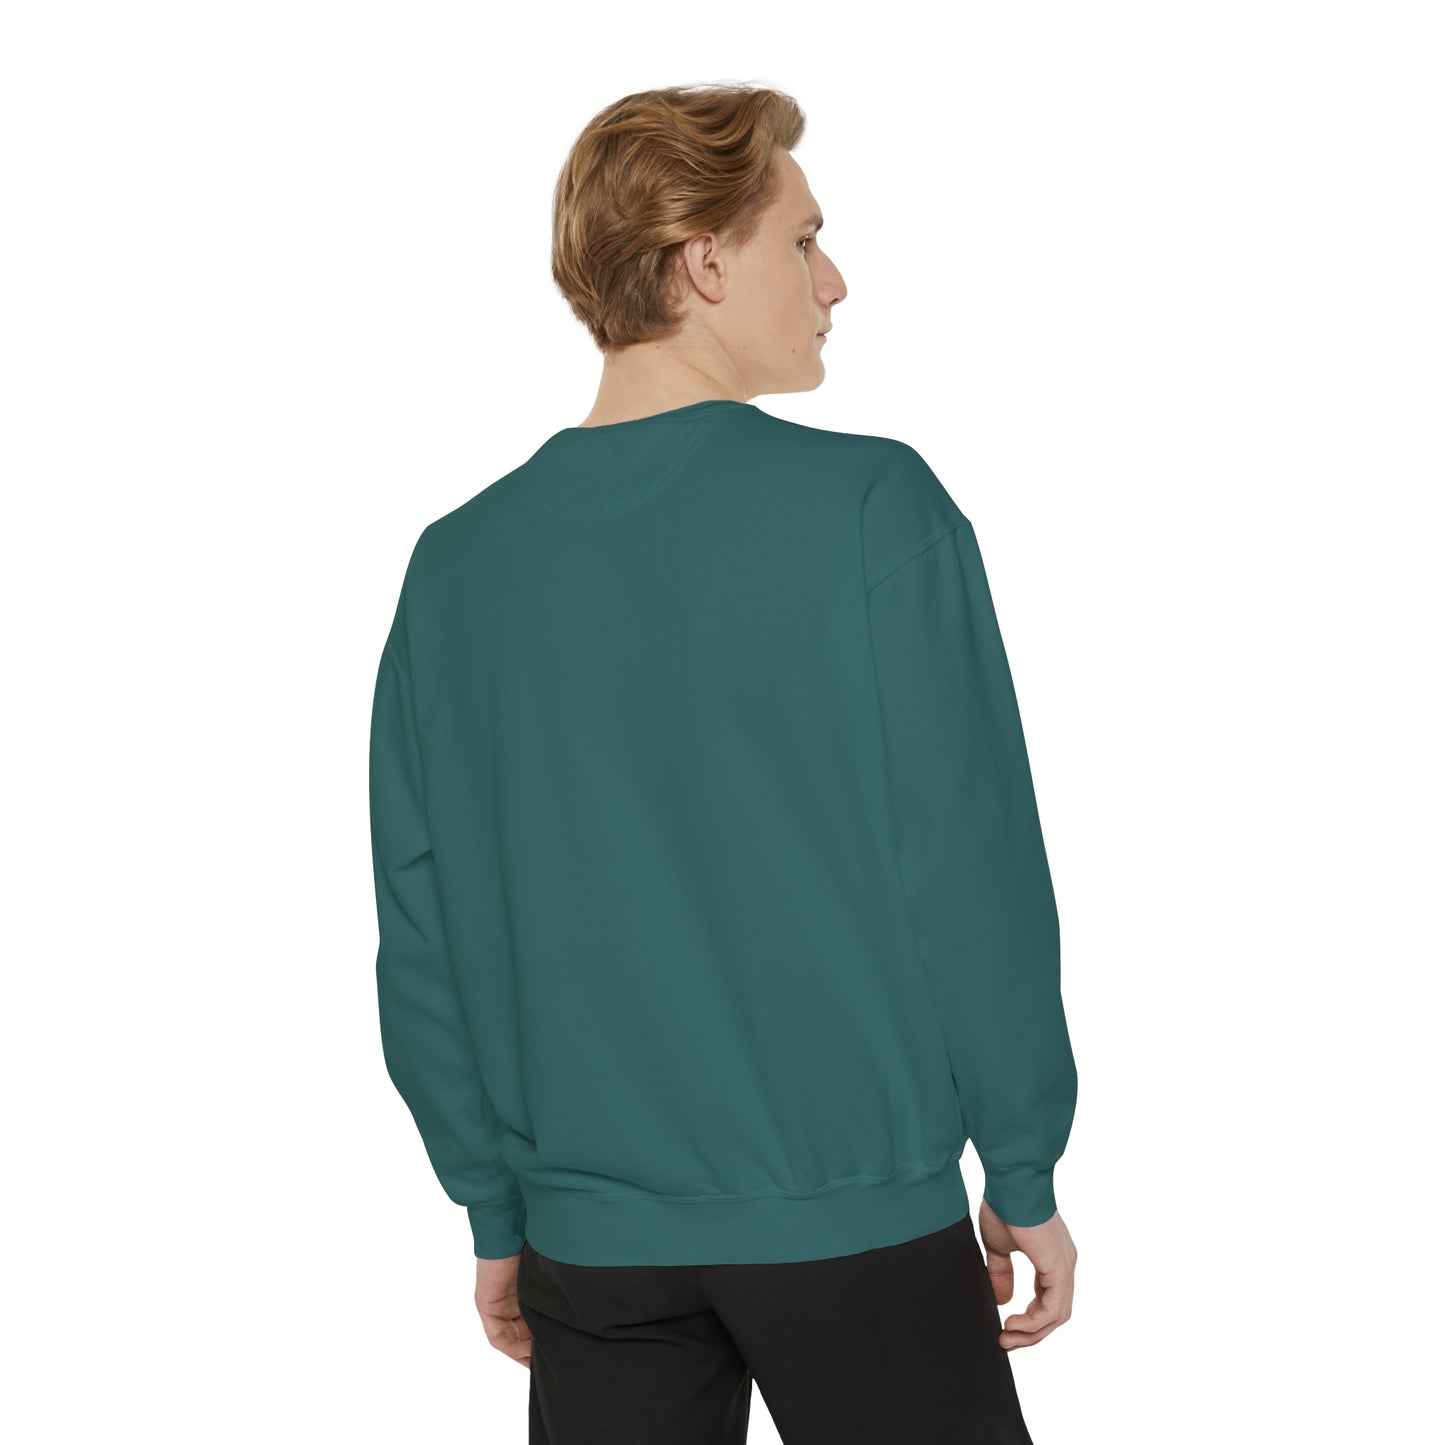 Dog Dad AF Unisex Garment-Dyed Sweatshirt